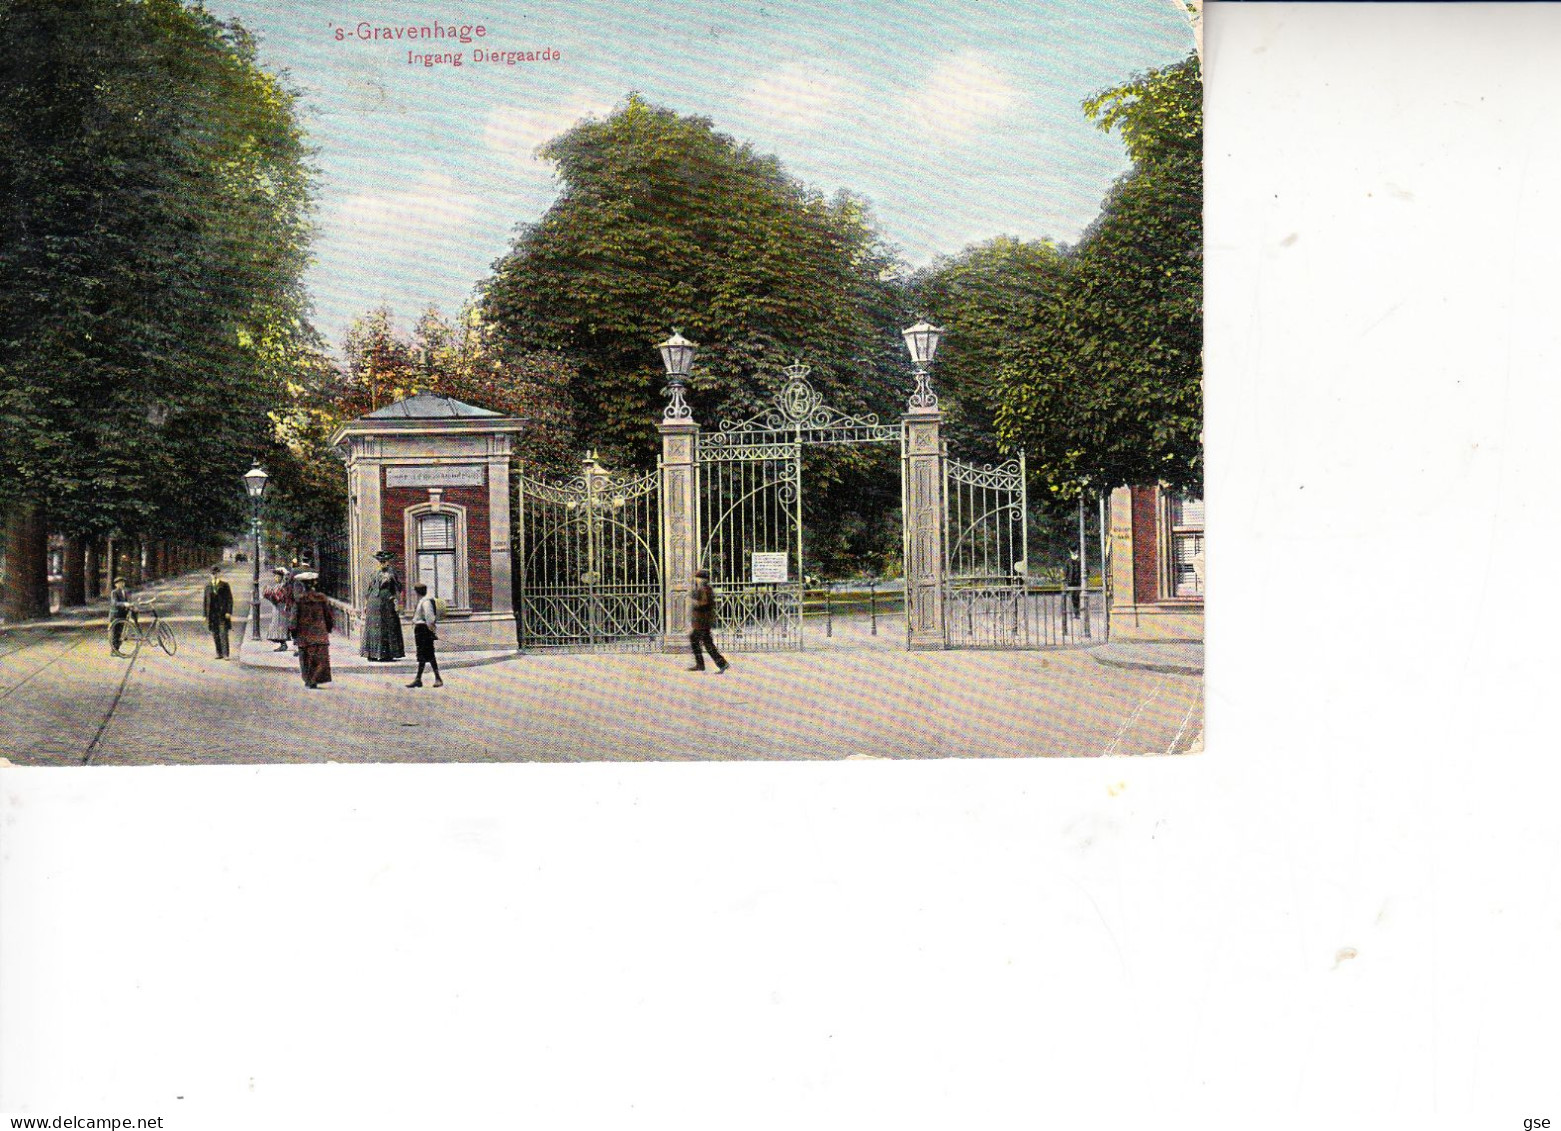 PAESI BASSI  1909 - Gravenhage - Ingang Diergaarde - Sammlungen & Sammellose